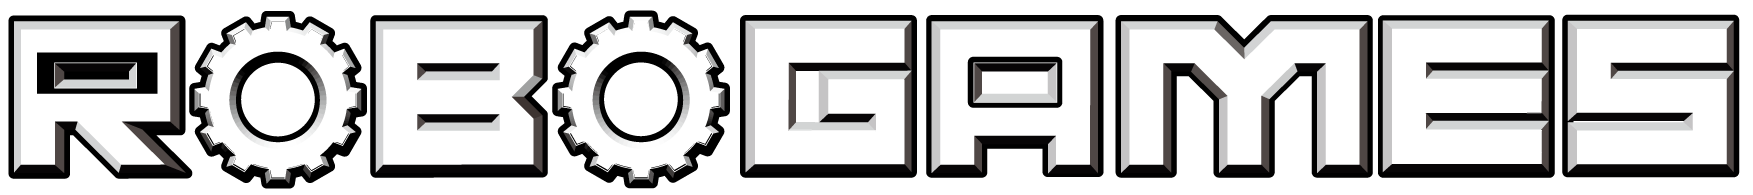 logo_robogames.png